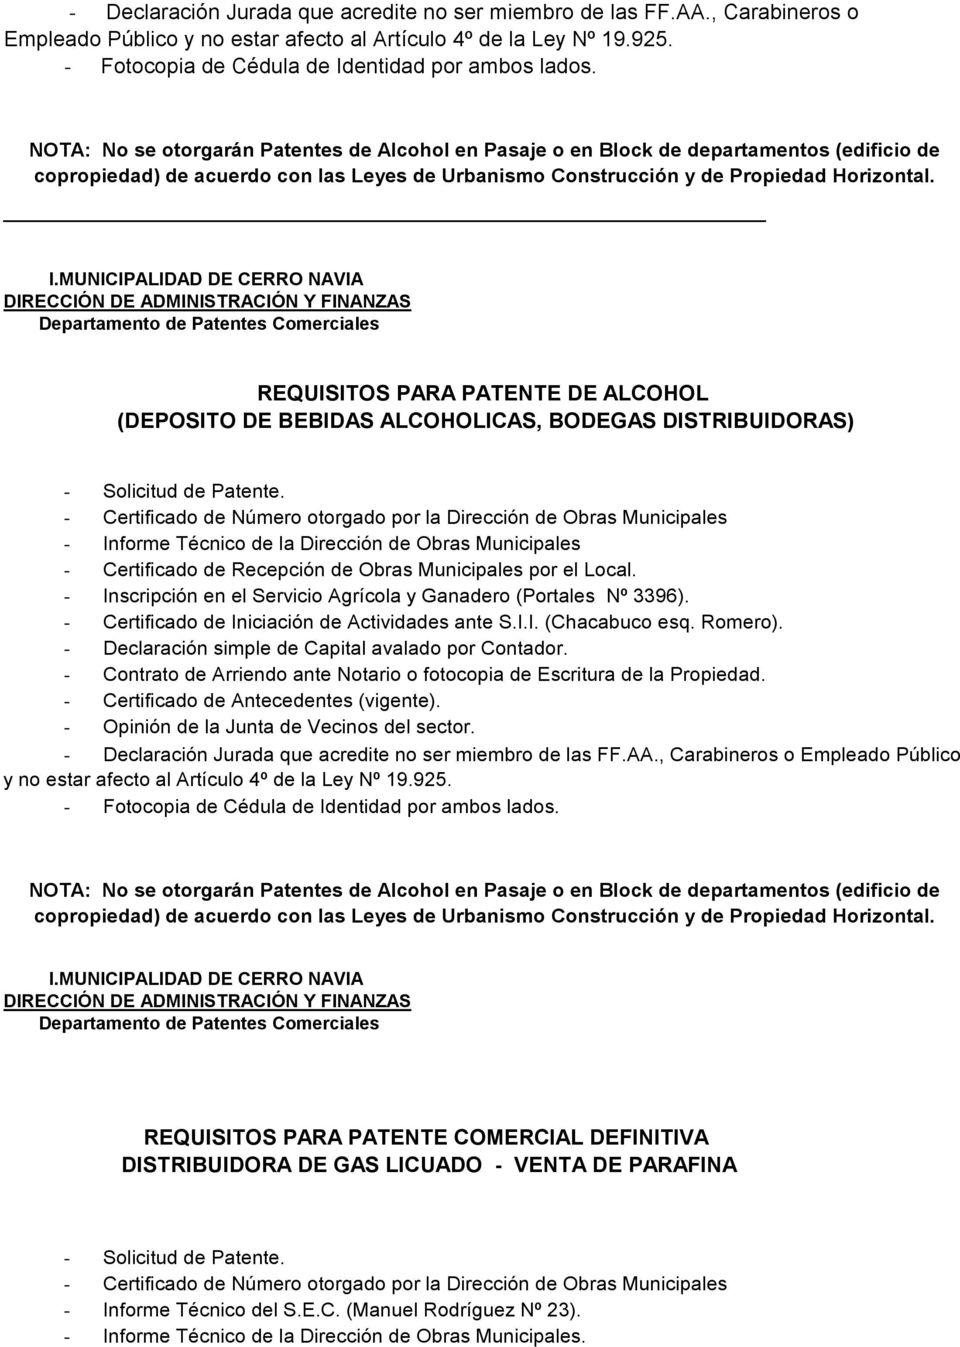 REQUISITOS PARA PATENTE DE ALCOHOL (DEPOSITO DE BEBIDAS ALCOHOLICAS, BODEGAS DISTRIBUIDORAS) - Certificado de Recepción de Obras Municipales por el Local.